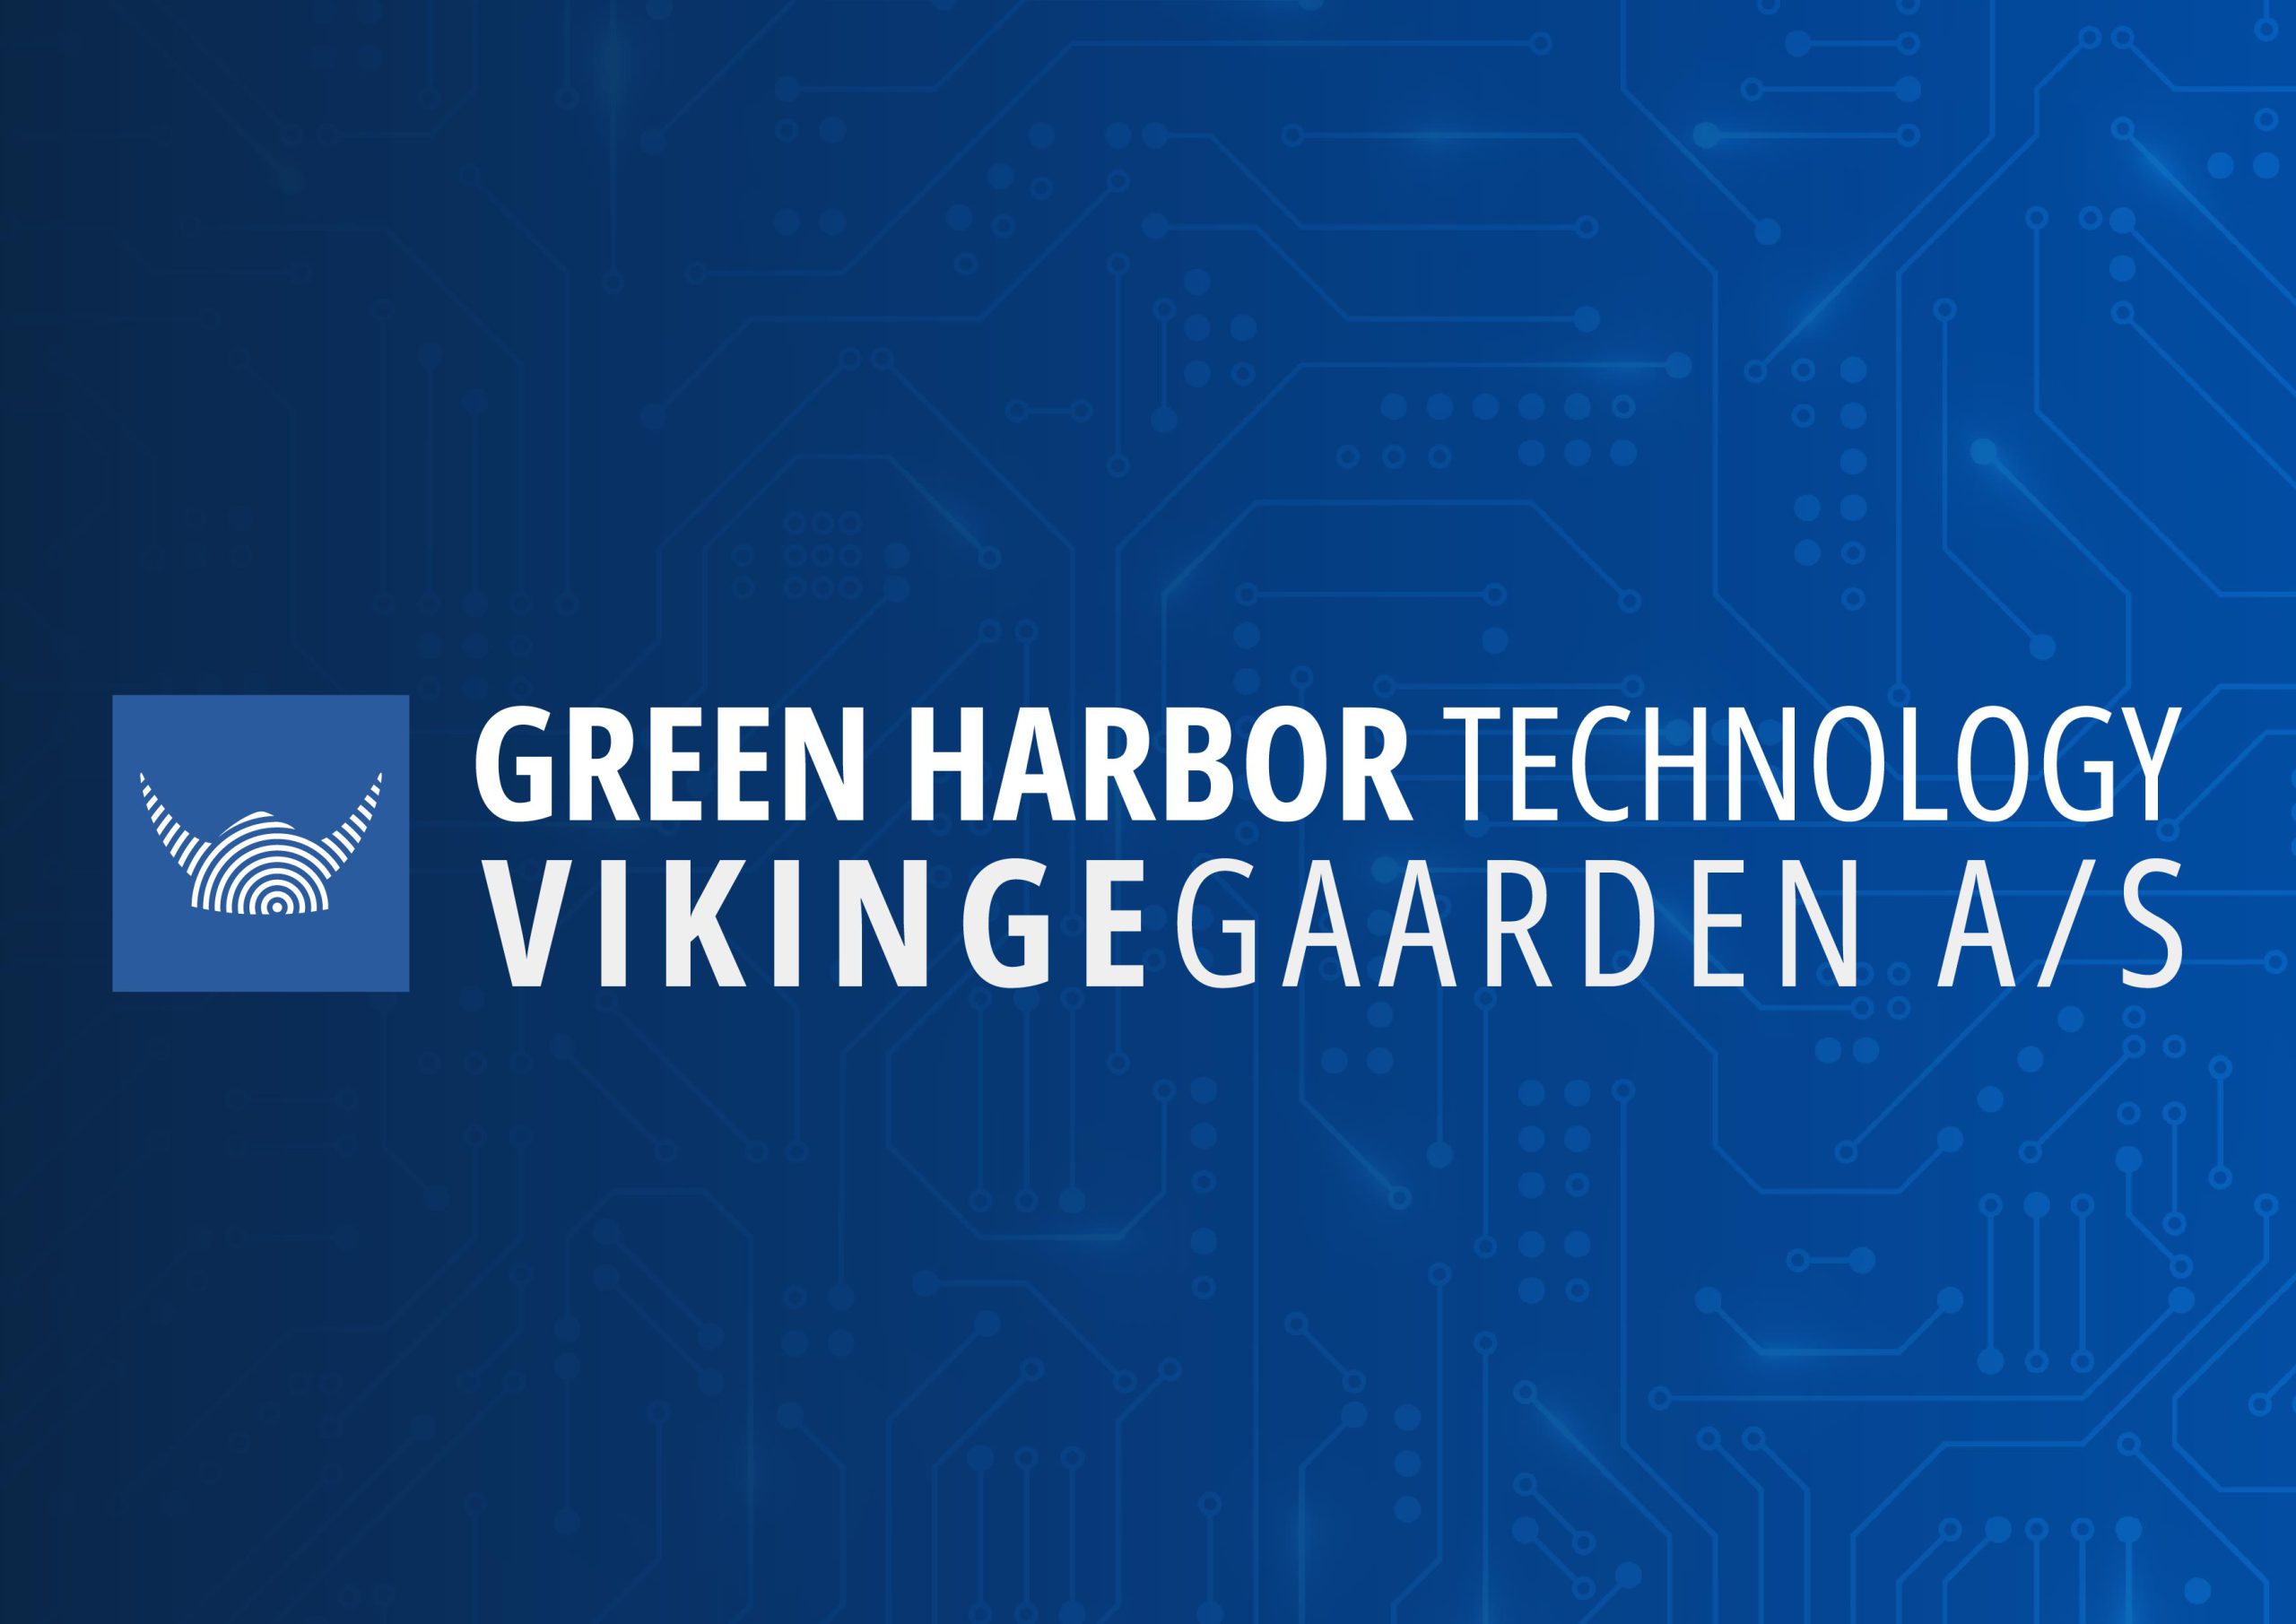 Vikingegaarden A/S on hyväksytty Danske Havnen liitännäisjäseneksi